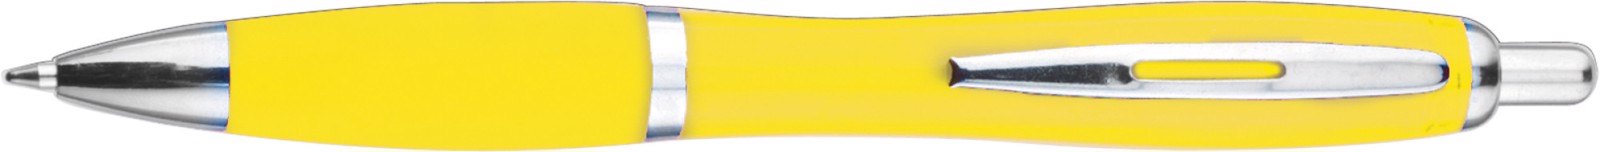 ABS ballpen - Yellow